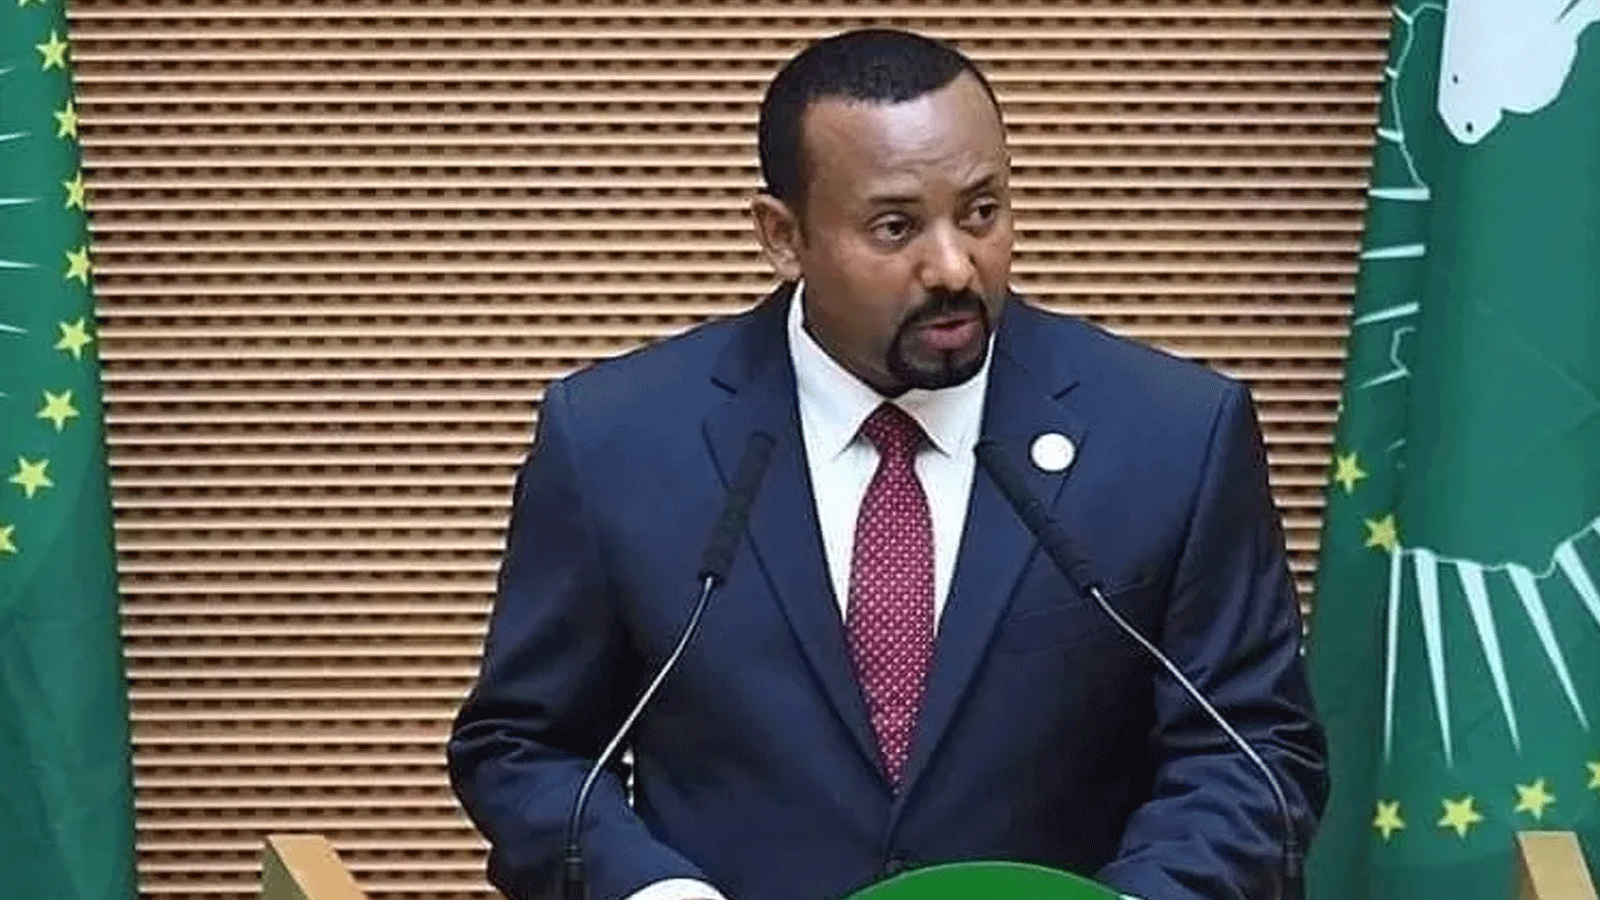 رئيس الوزراء الإثيوبي أبي أحمد يتحدث خلال القمة الافتتاحية لرؤساء دول وحكومات الاتحاد الأفريقي في أديس أبابا، إثيوبيا، في 5 فبراير \شباط